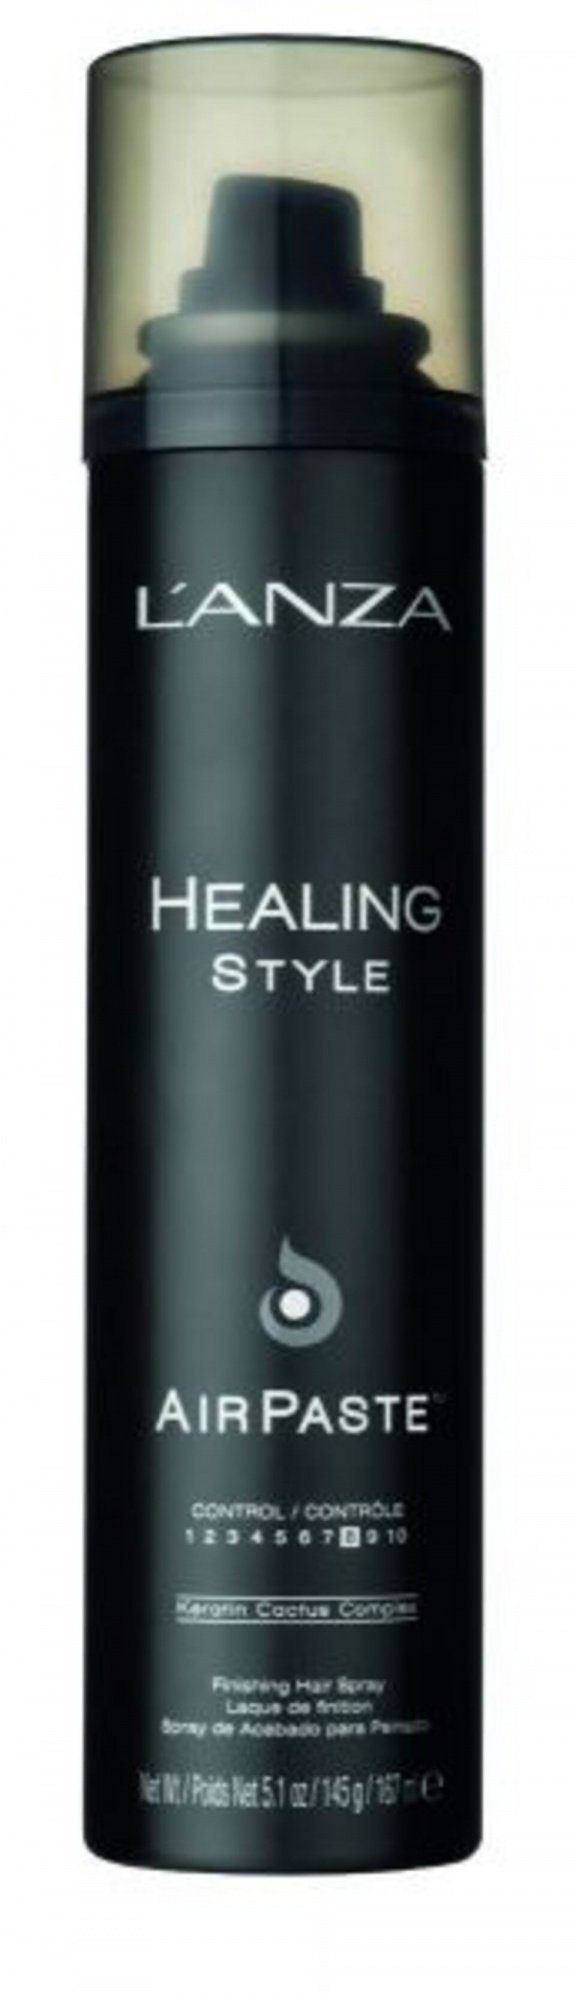 167 Healing Volumen, 1-tlg., in Style Definition Lanza Sprayform, ml, Stylingpaste Haarspray Paste Textur, Air